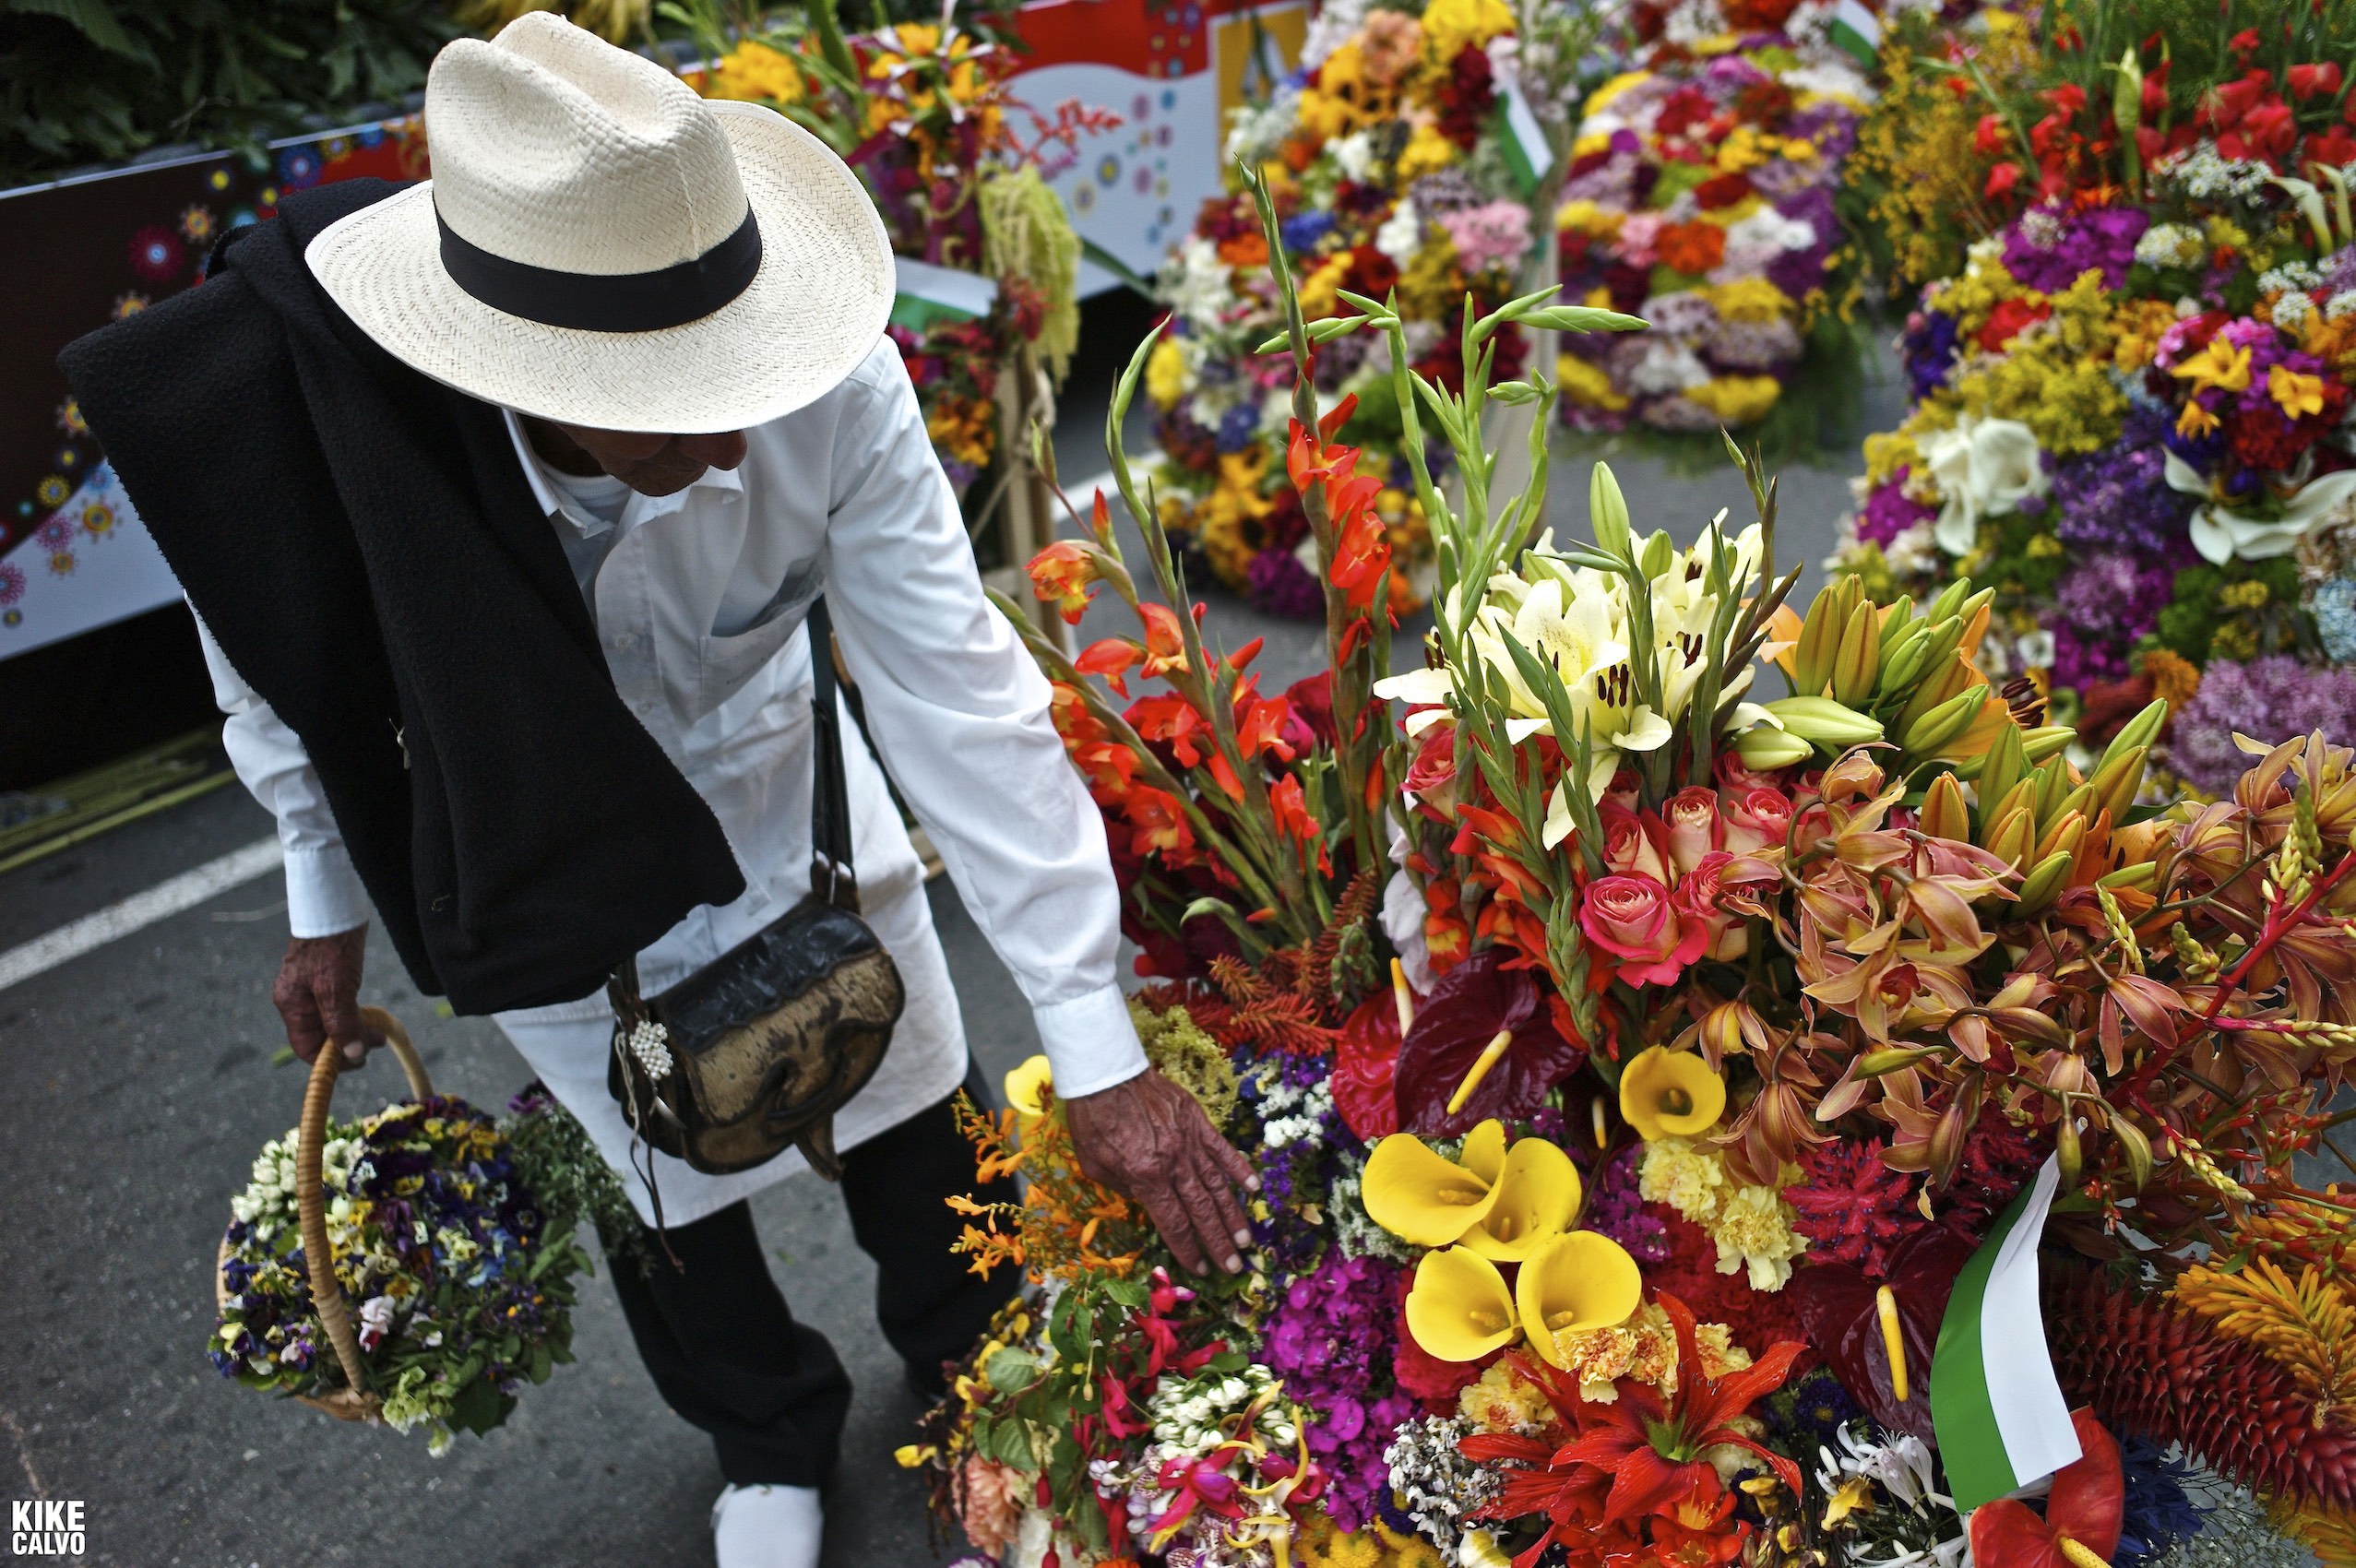 Medellin Flower Festival